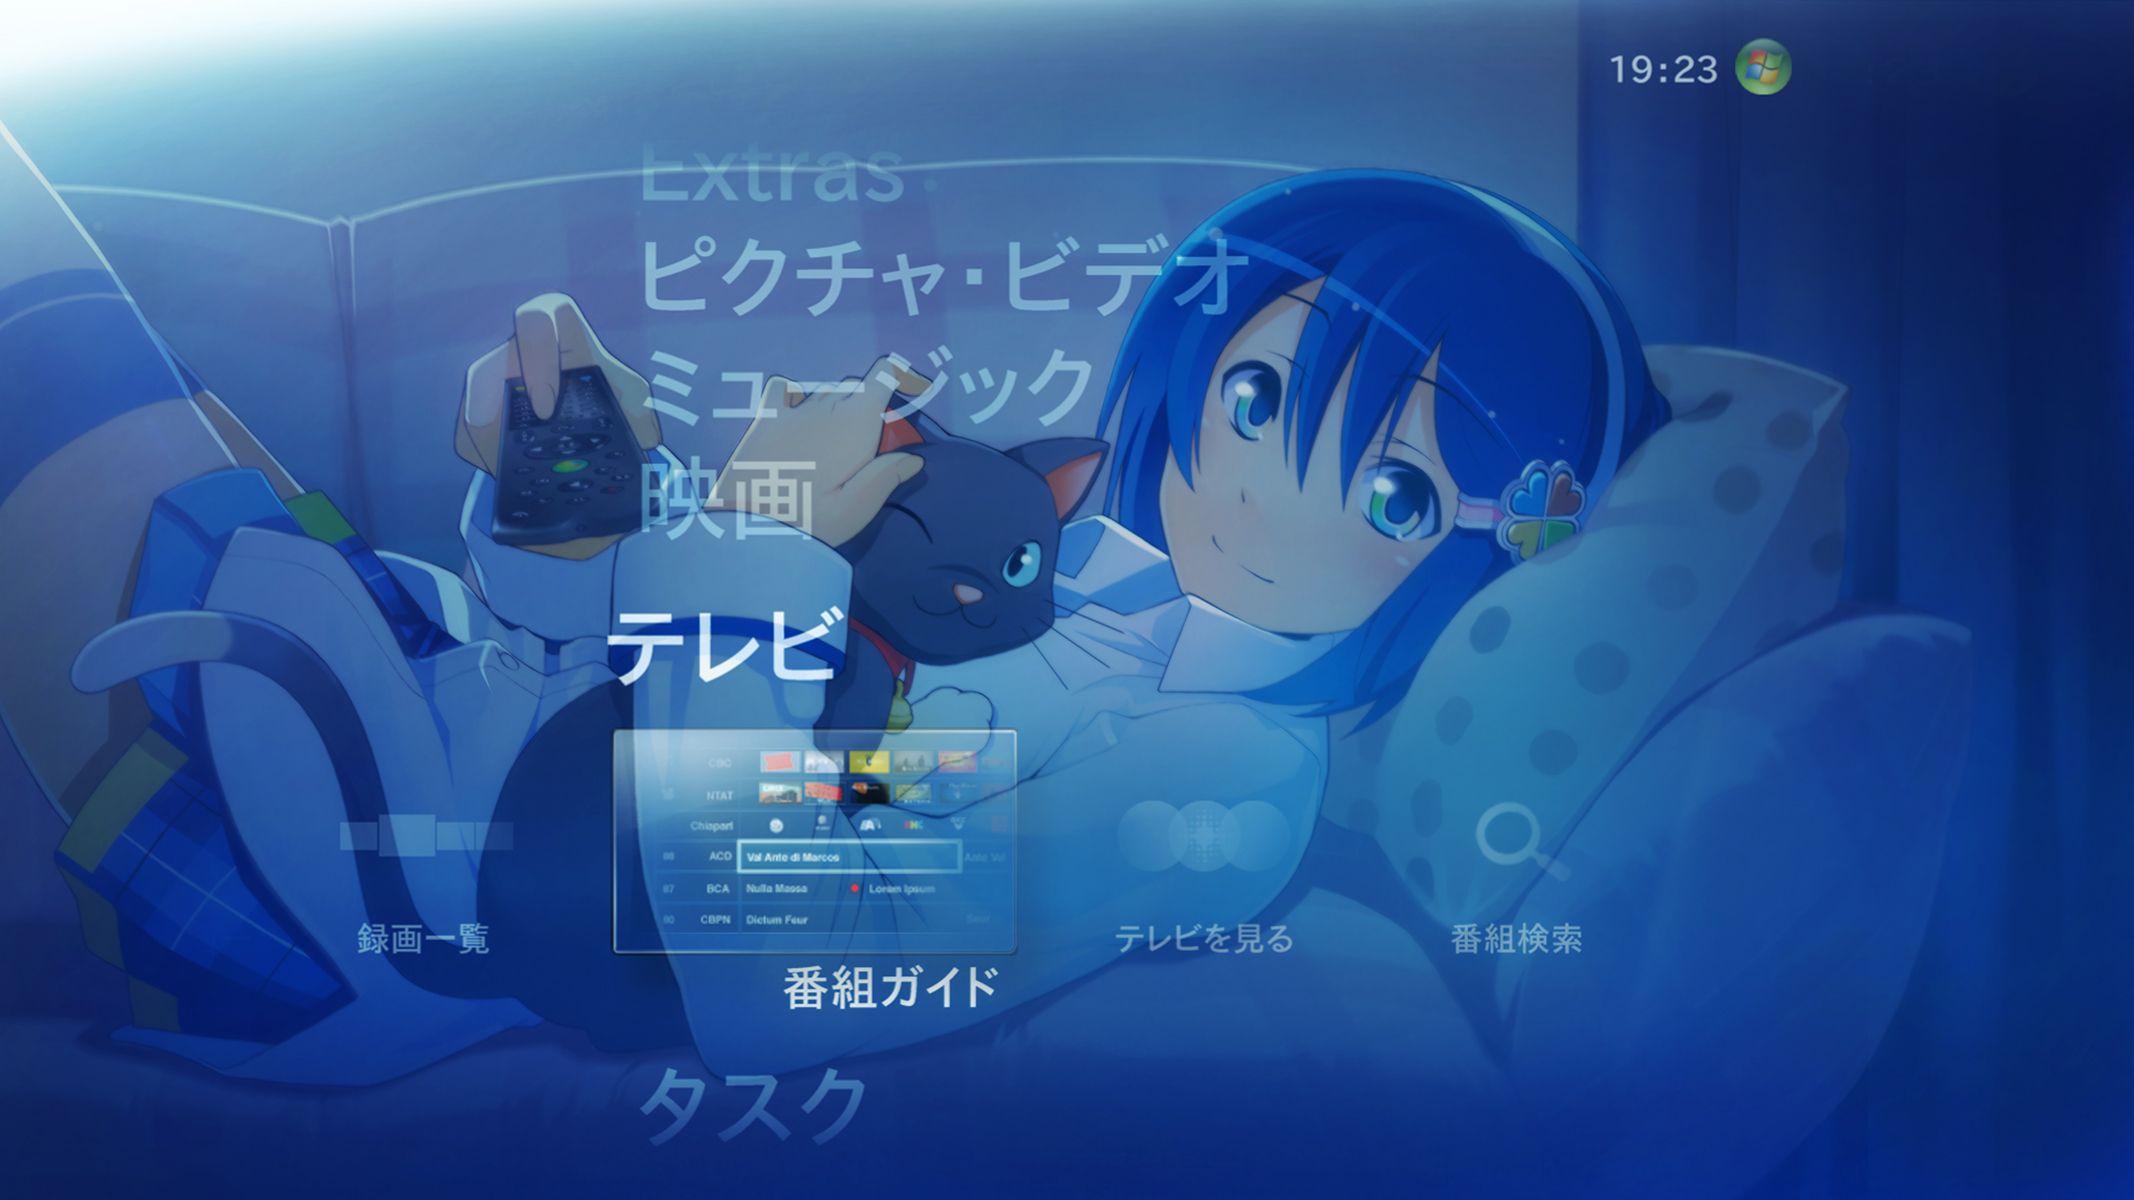 Windows 7 Nanami Theme wallpaper 77806